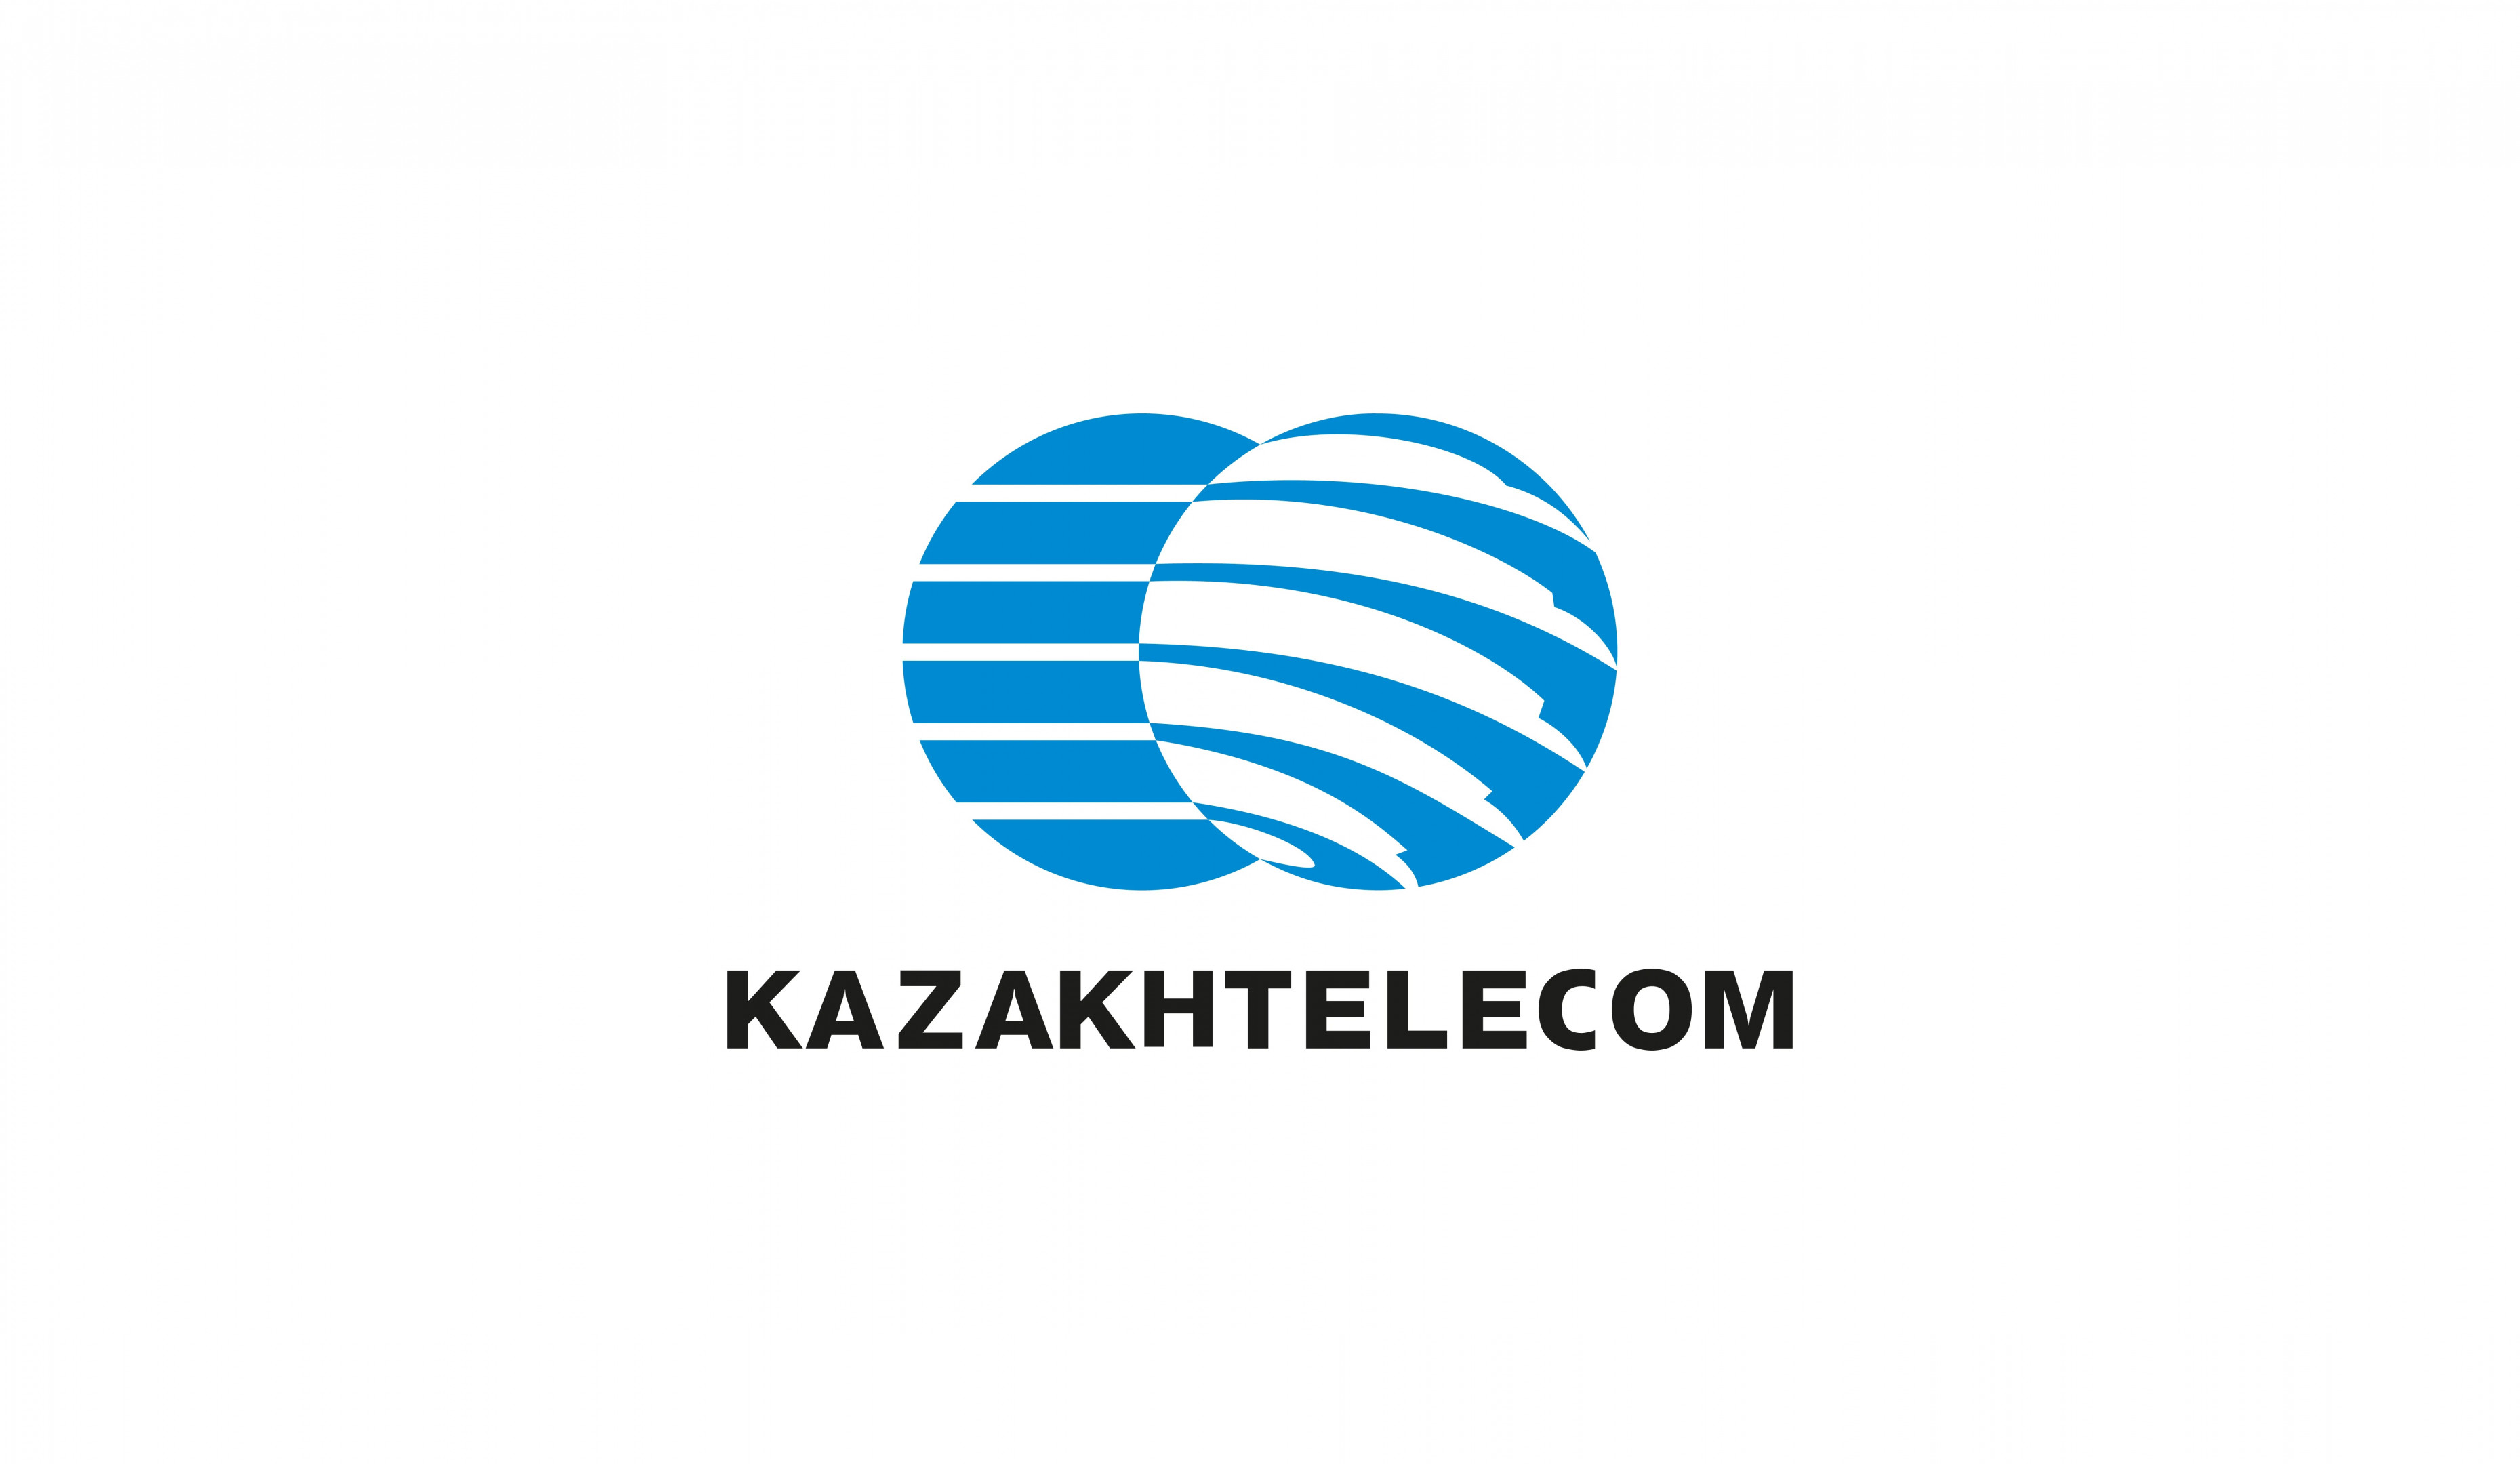 Kazaktelecom